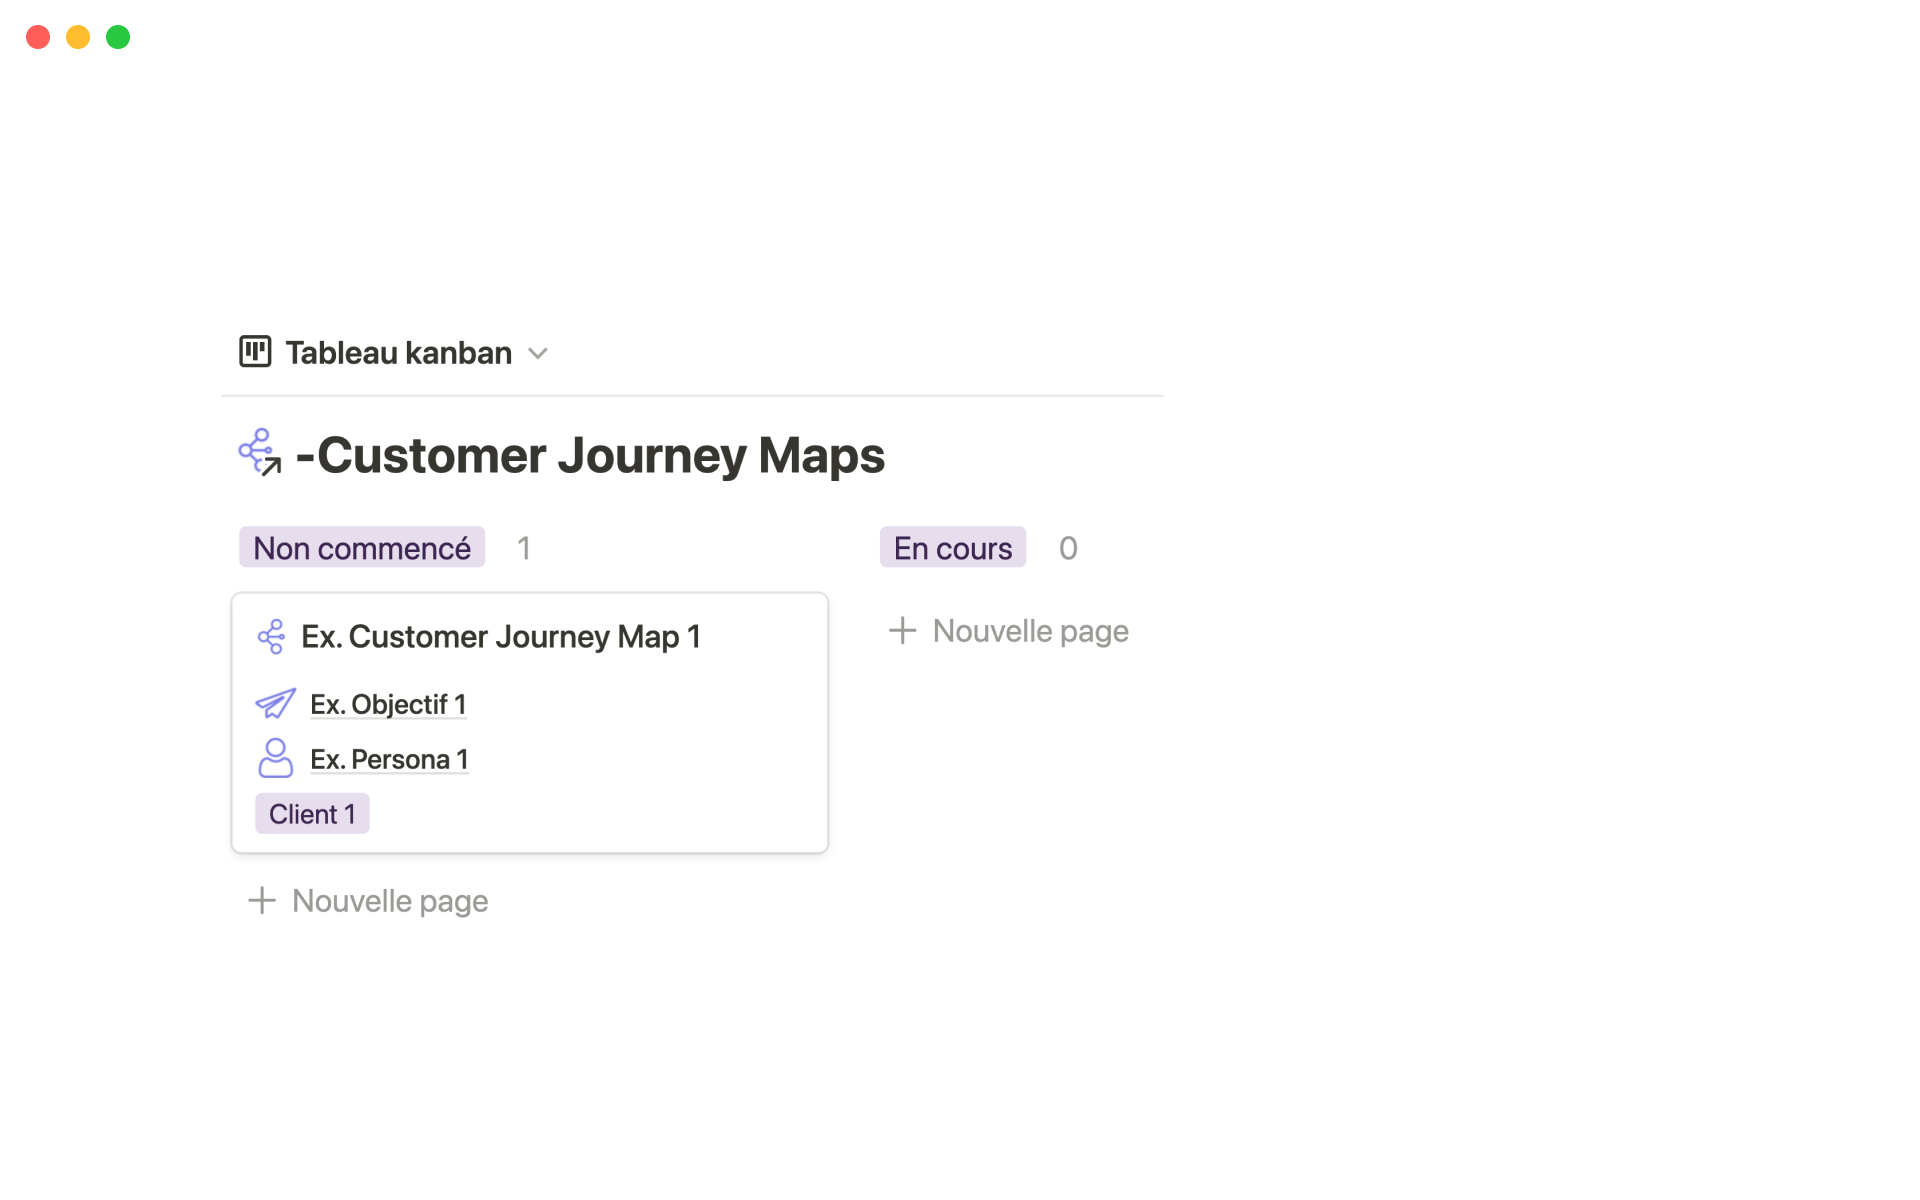 Un outil pour créer, contrôler et suivre vos Customer Journey Maps